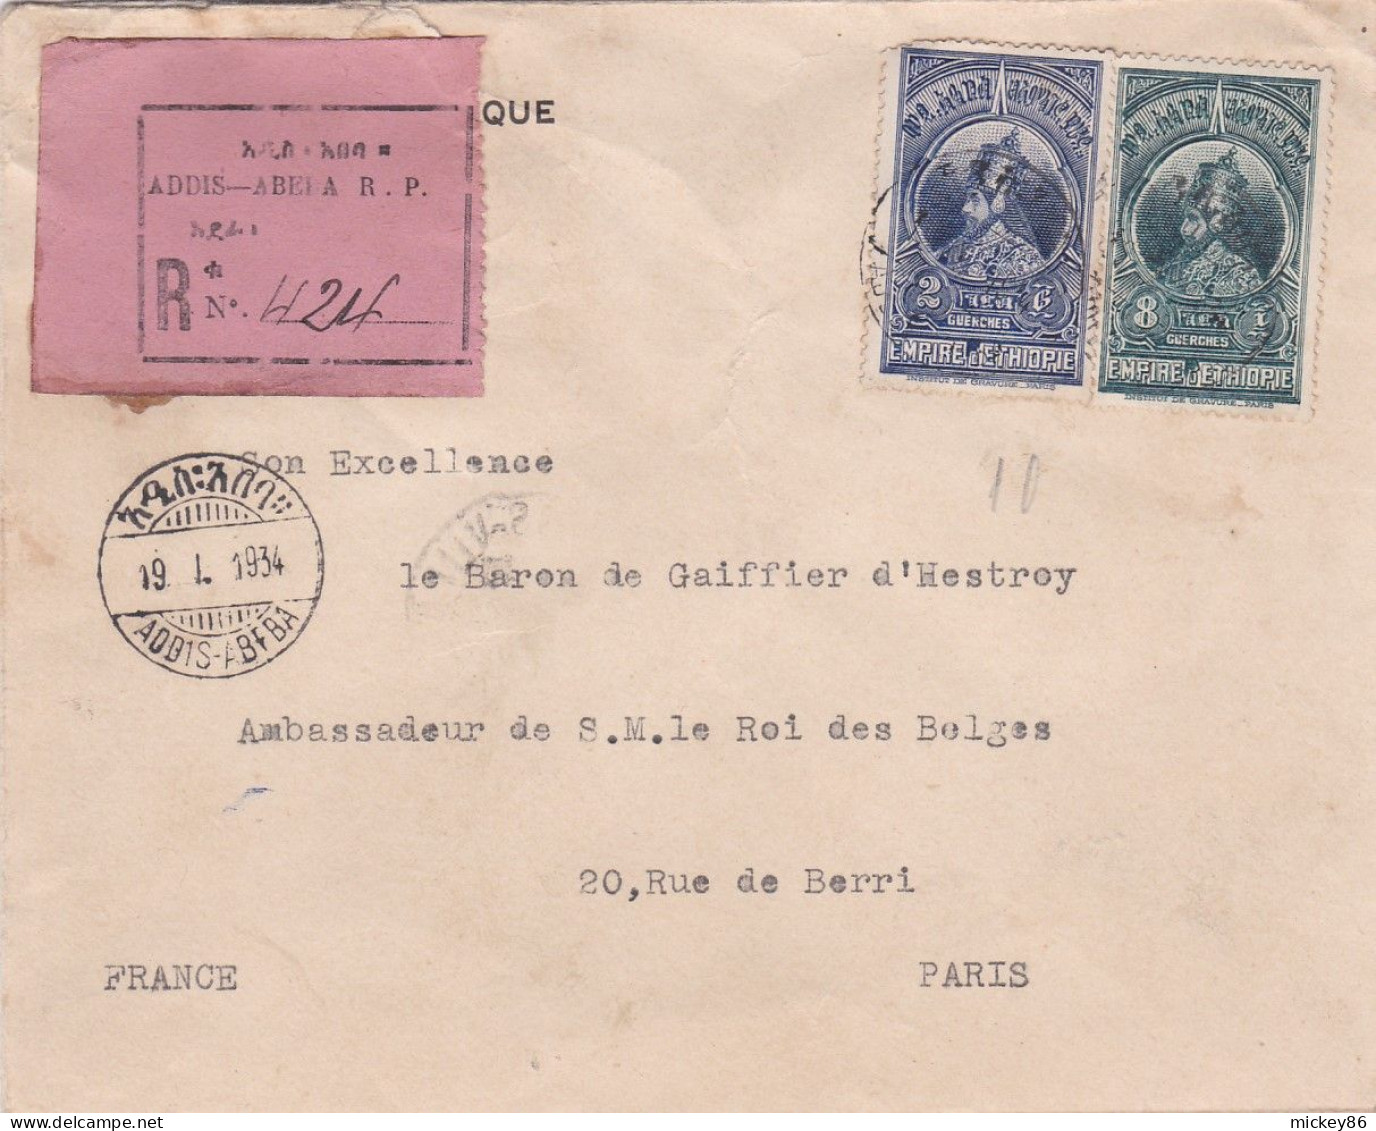 ETHIOPIE -1934 - Lettre Recommandée ADDIS-ABEBA  Pour PARIS (France )..beaux Timbres  Sur Lettre , Cachets - Ethiopia